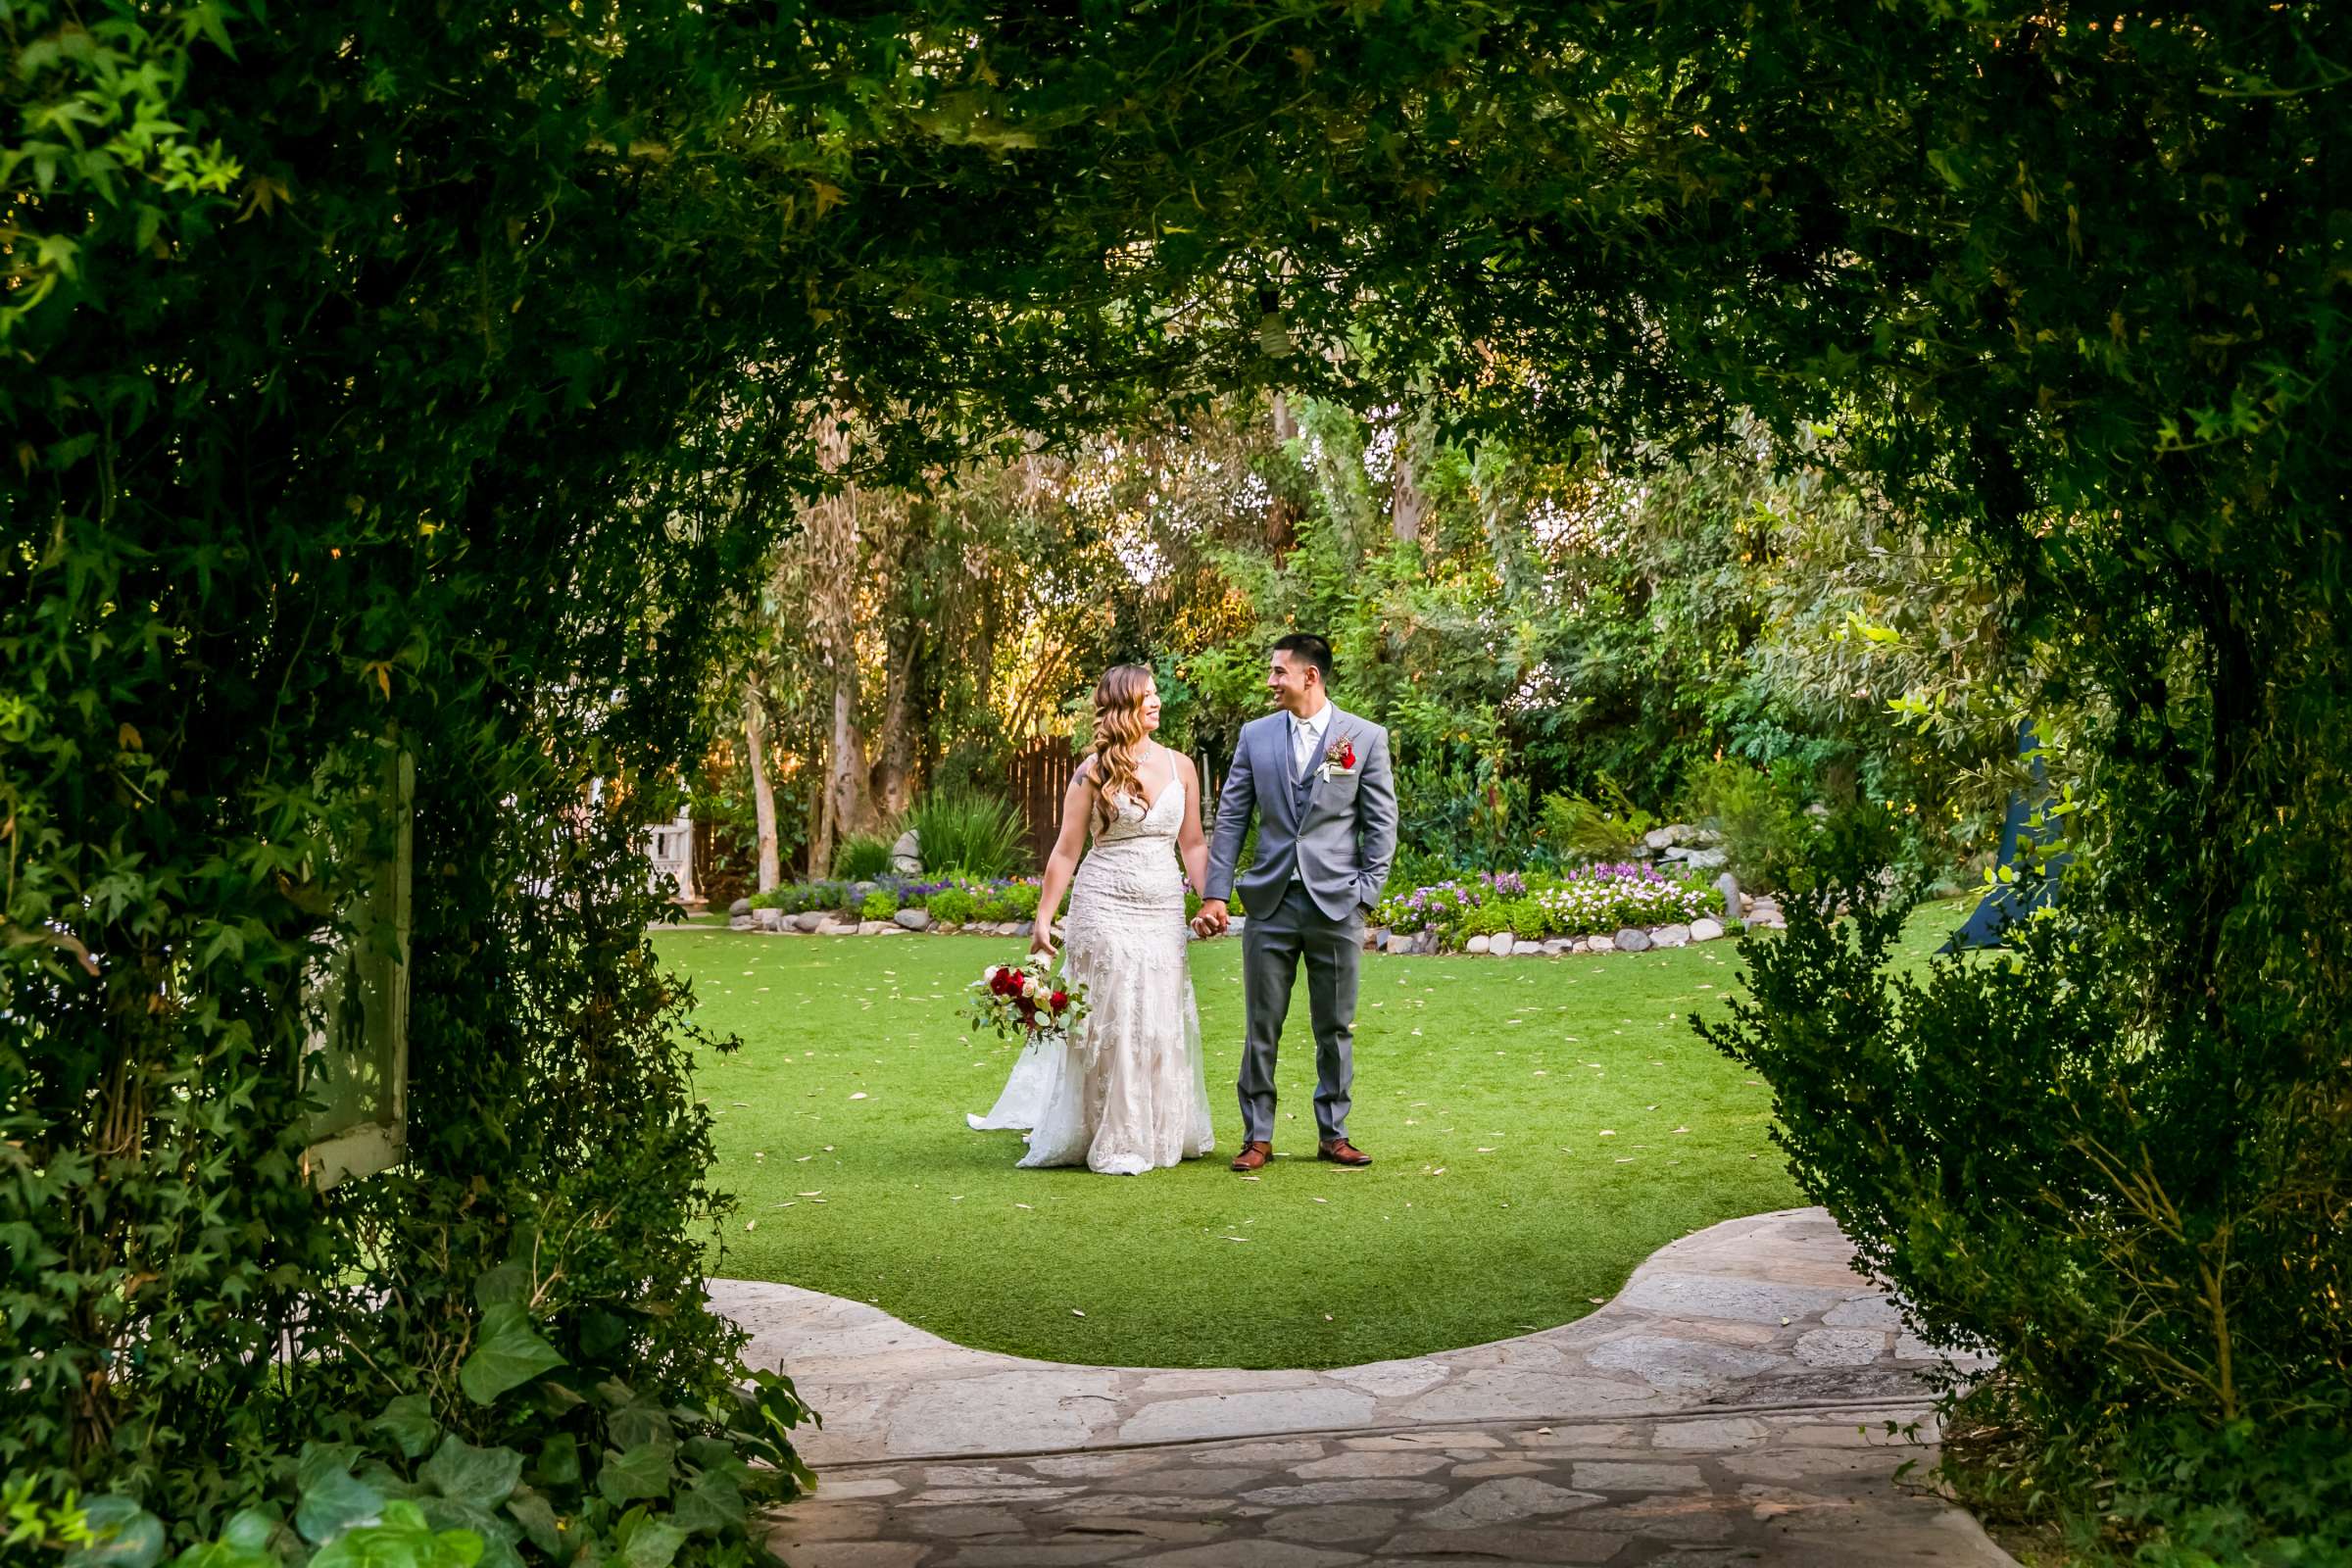 Twin Oaks House & Gardens Wedding Estate Wedding, Merrilynn and Trey Wedding Photo #14 by True Photography